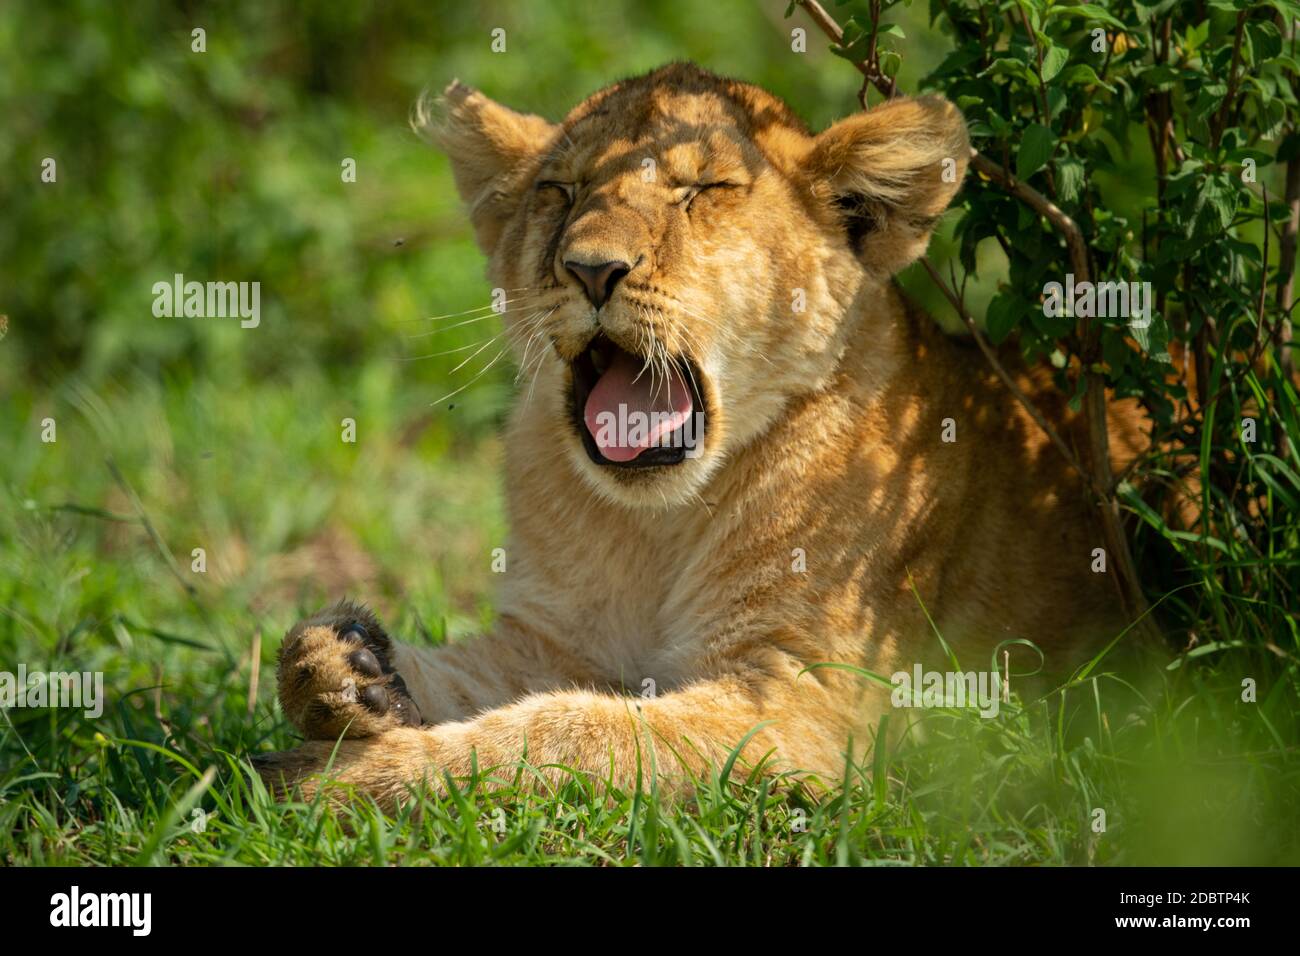 Close-up of lion cub yawning under bush Stock Photo